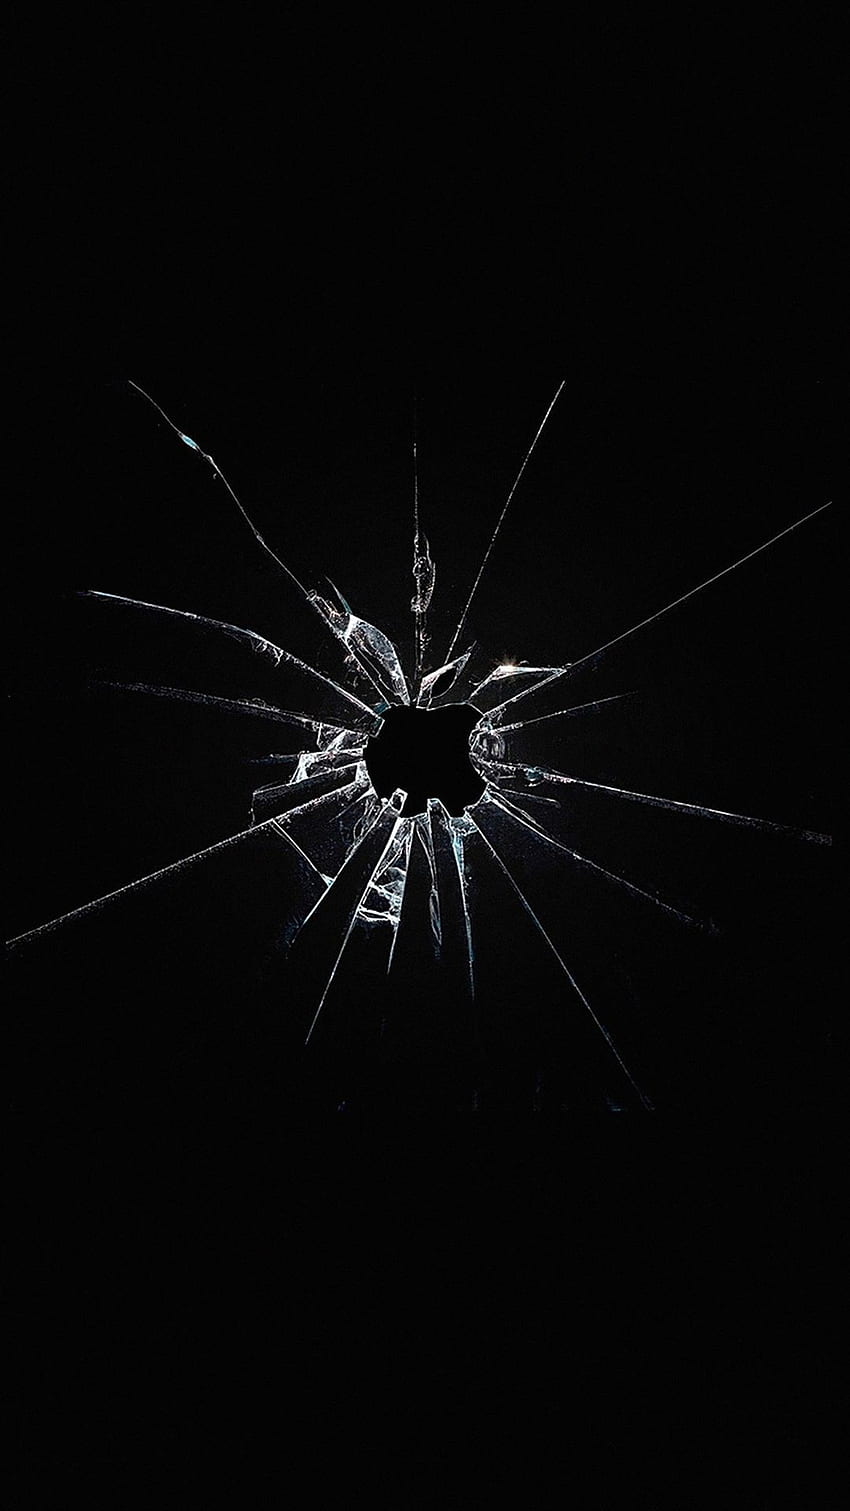 Ventana del logotipo de Apple Dark Broken iPhone 6 . iPhone, iPad activado. Vidrio roto, rota, Oscuro, Agrietado fondo de pantalla del teléfono